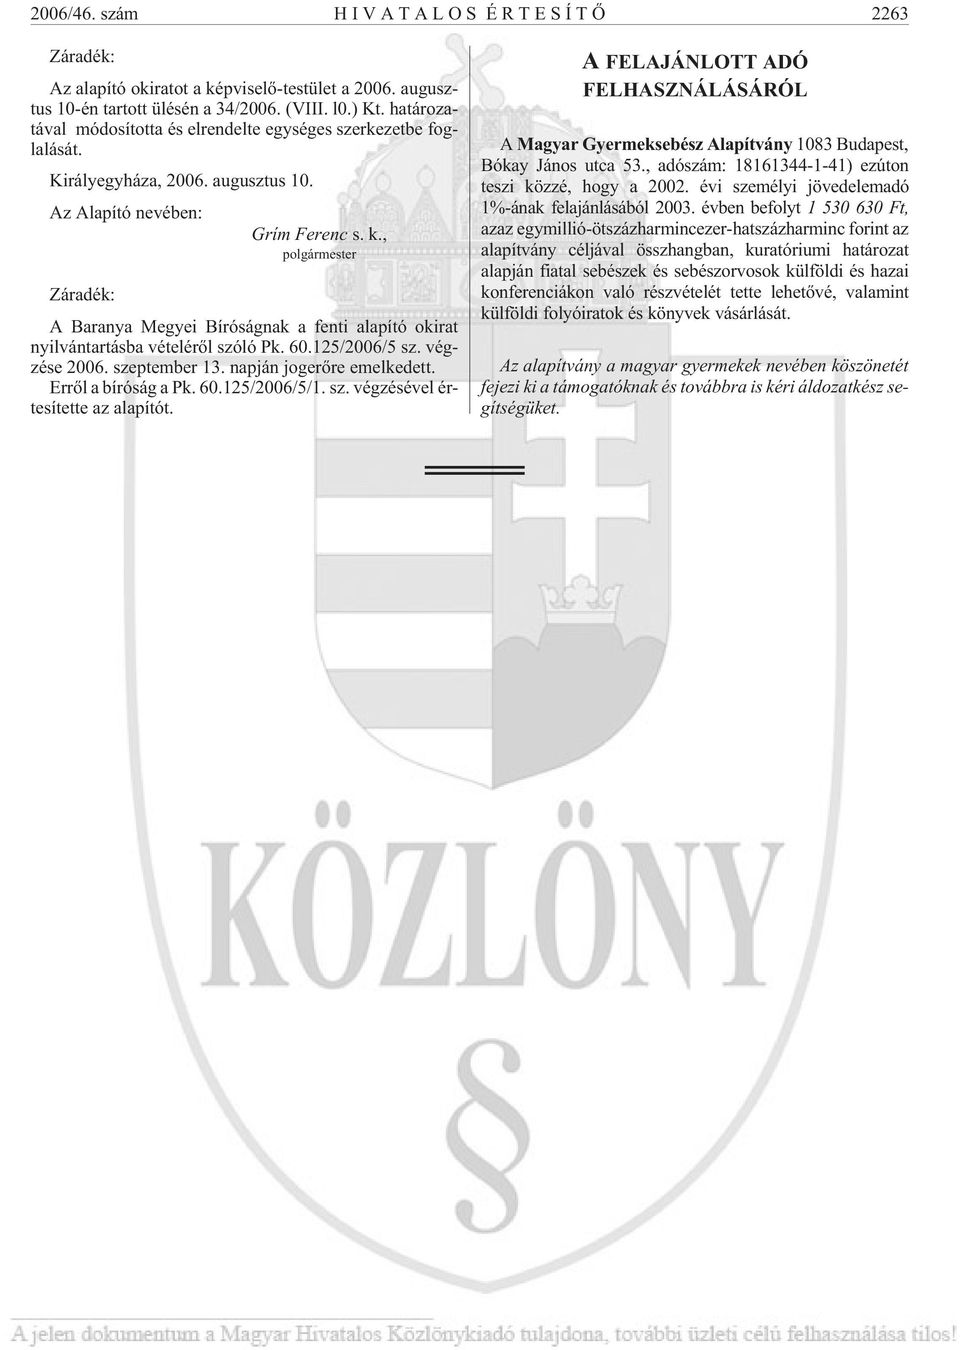 , polgármester Záradék: A Baranya Megyei Bíróságnak a fenti alapító okirat nyilvántartásba vételérõl szóló Pk. 60.125/2006/5 sz. végzése 2006. szeptember 13. napján jogerõre emelkedett.